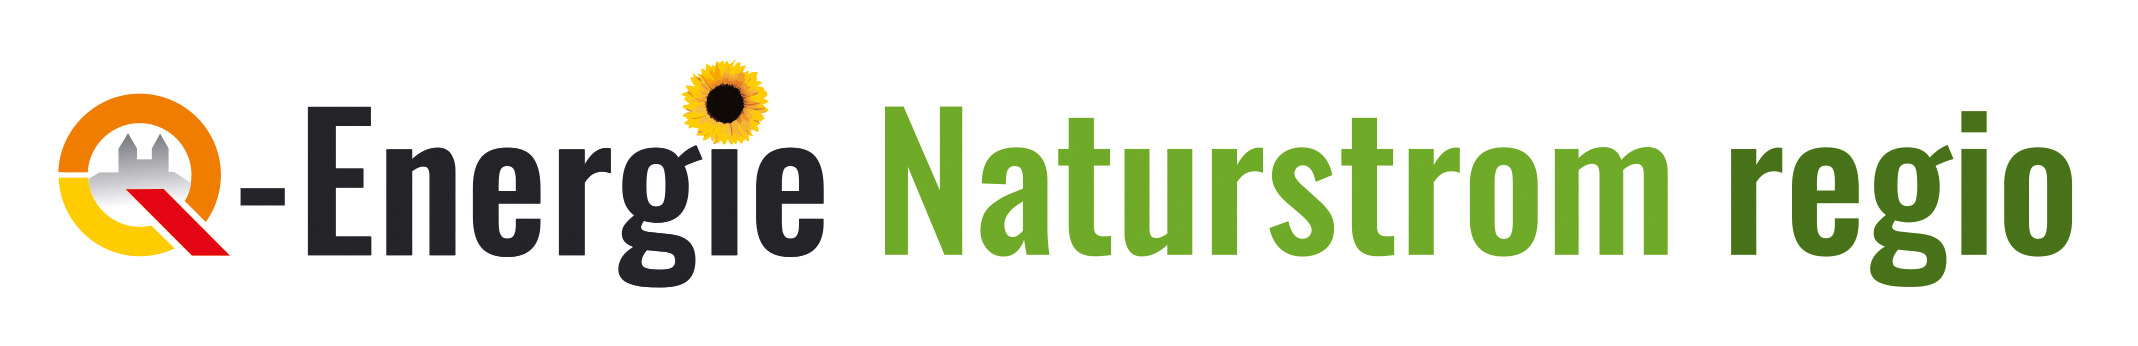 Logo Q-Energie Naturstrom regio